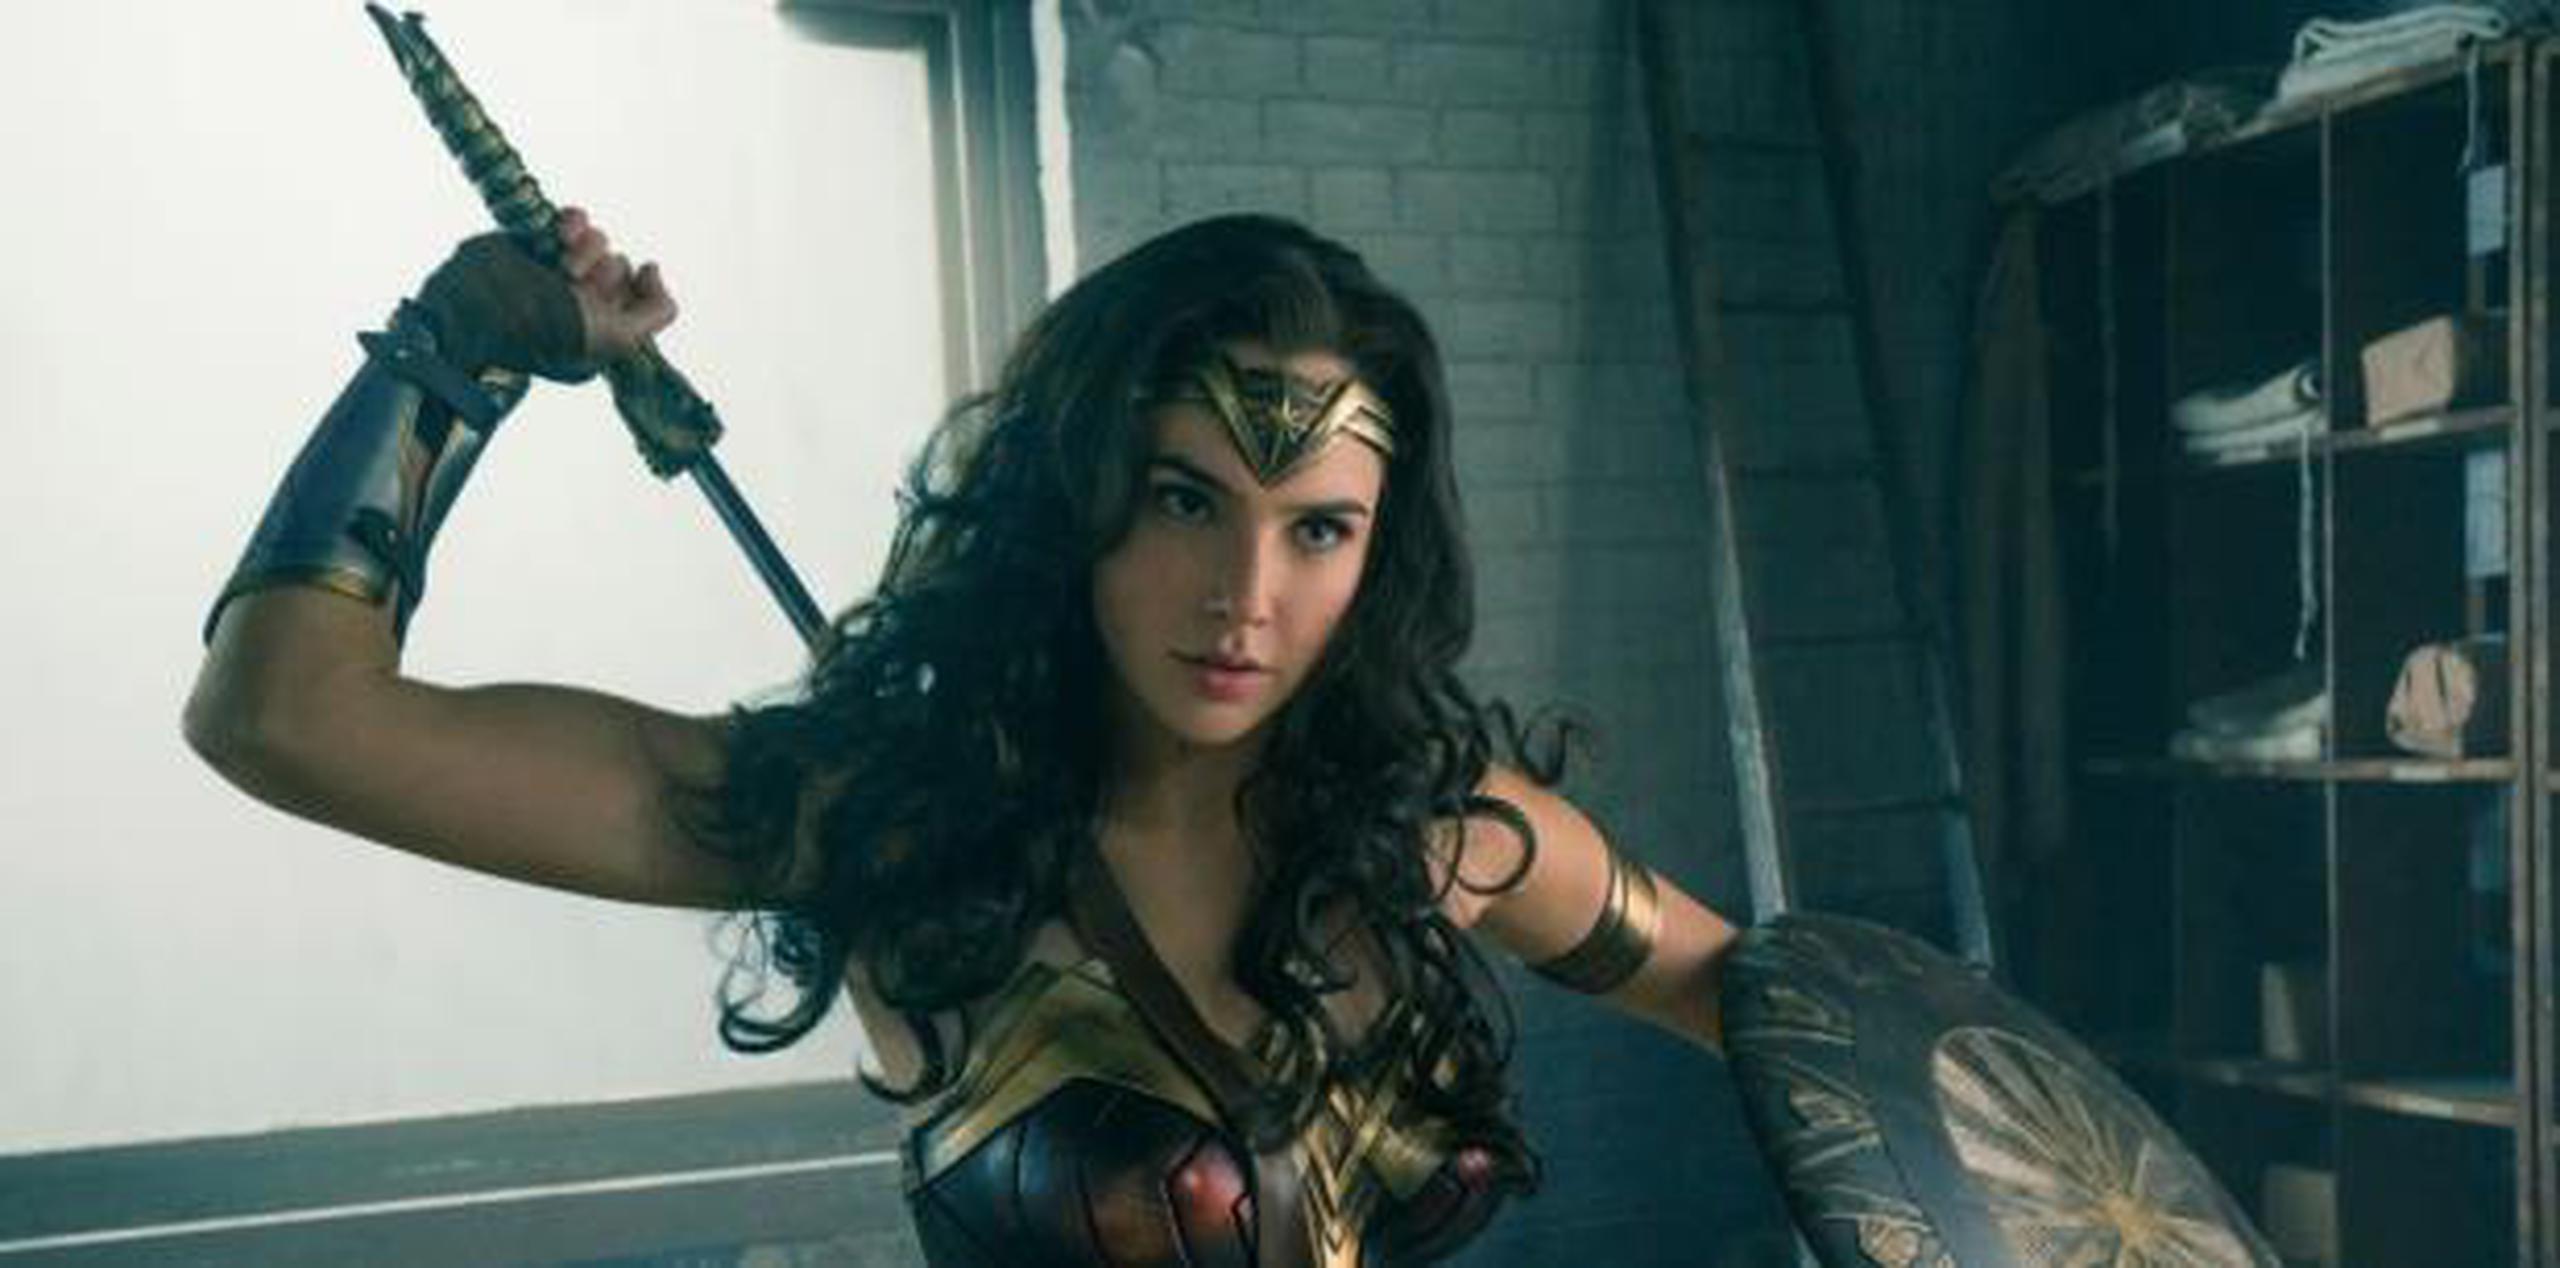 Los detalles de la trama de la secuela de Wonder Woman todavía se mantienen en total secreto.  (AP)